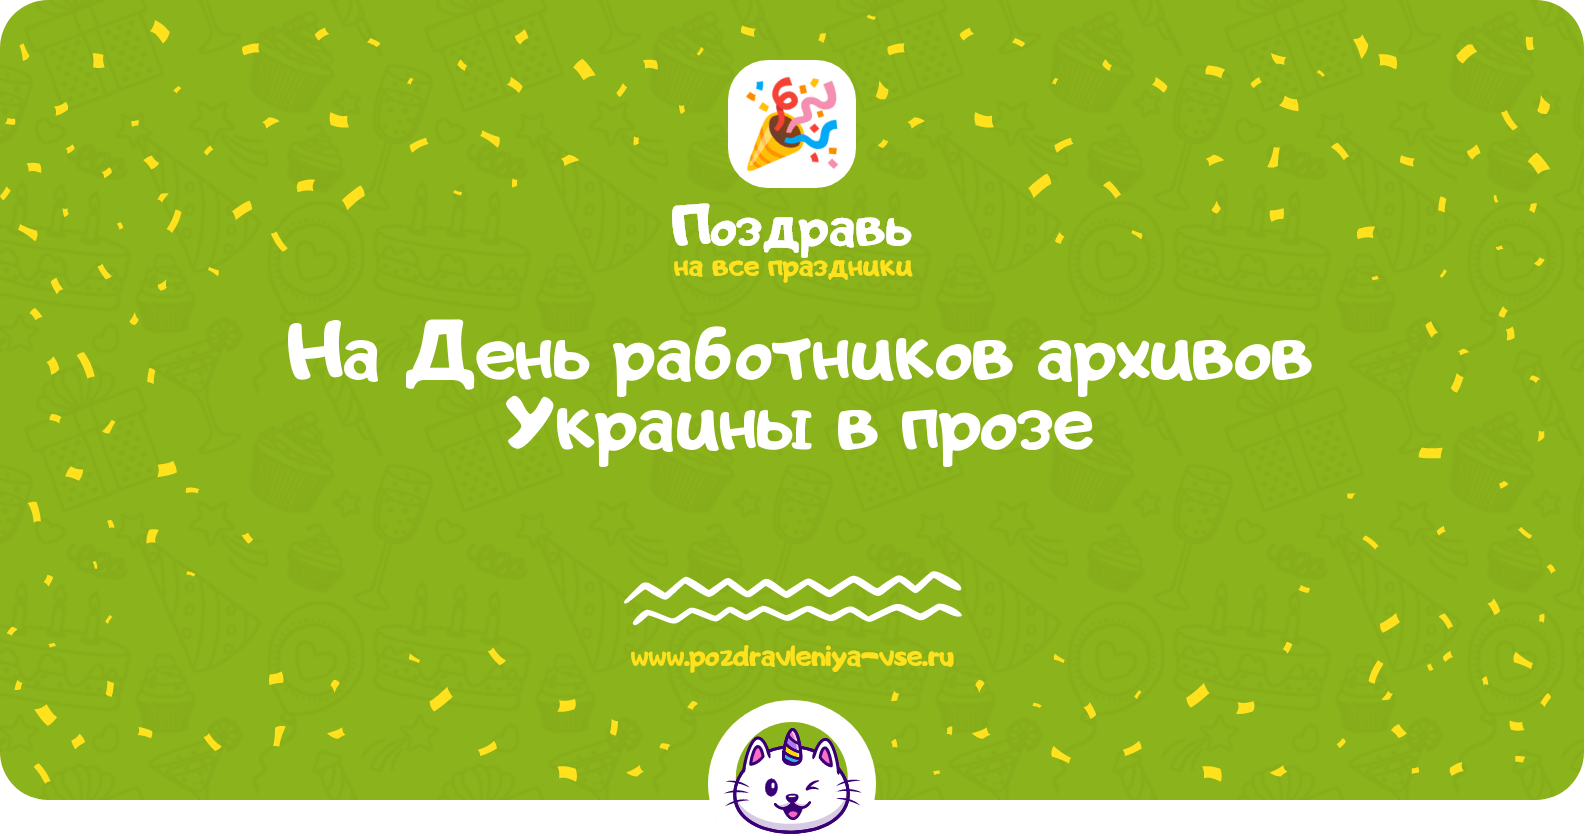 Поздравления на День работников архивов Украины в прозе